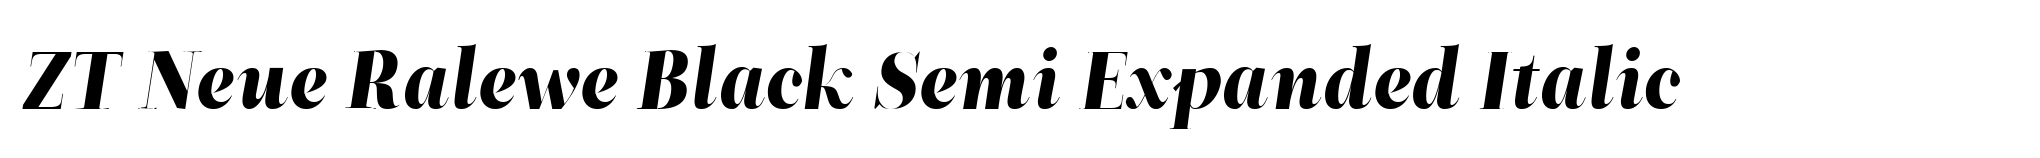 ZT Neue Ralewe Black Semi Expanded Italic image